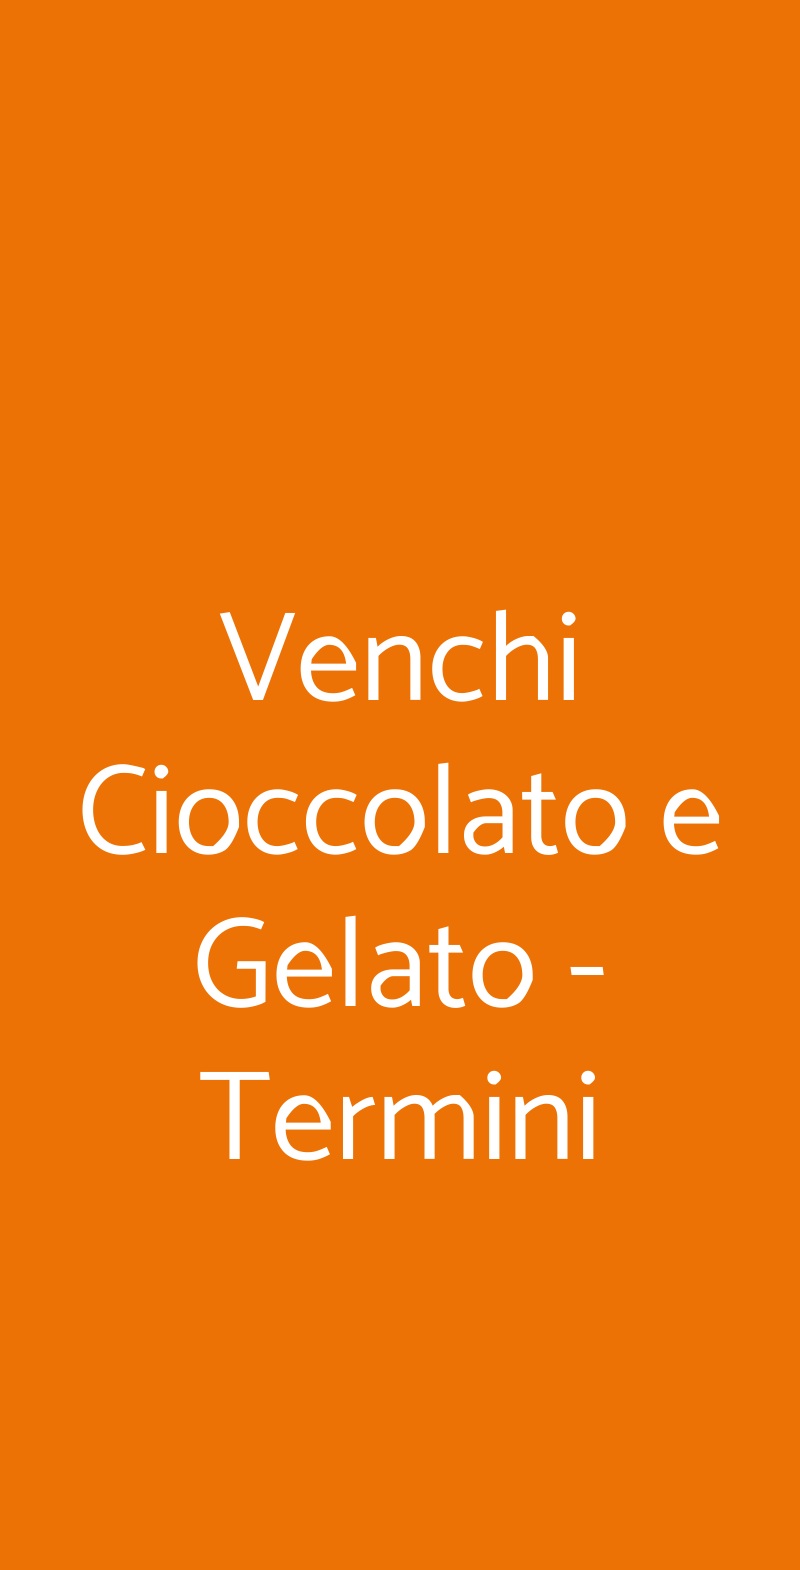 Venchi Cioccolato e Gelato - Termini Roma menù 1 pagina